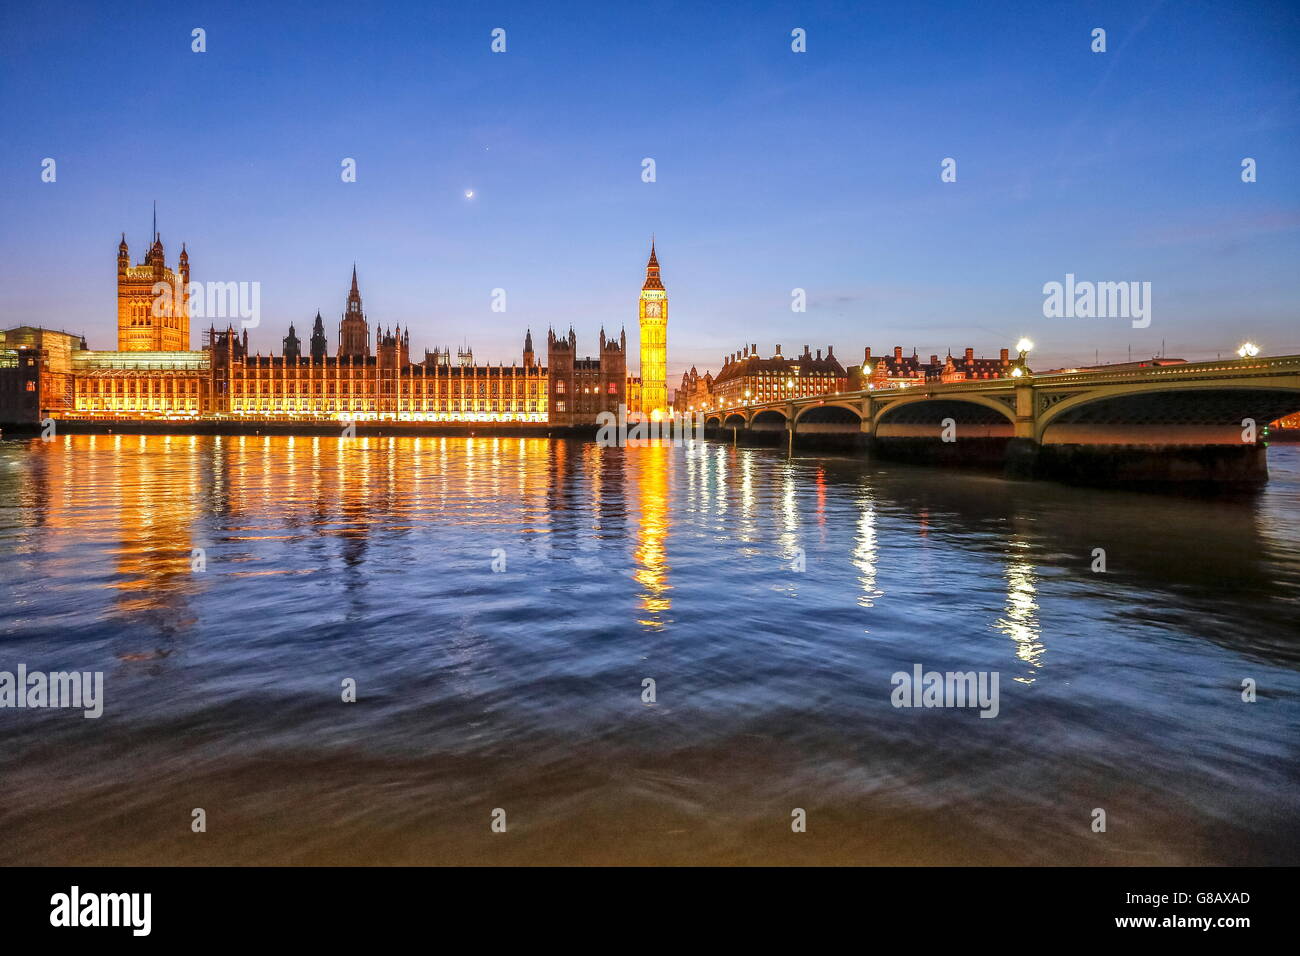 Vue nocturne de la tamise du palais de Westminster et Big Ben Londres Royaume Uni Europe Banque D'Images